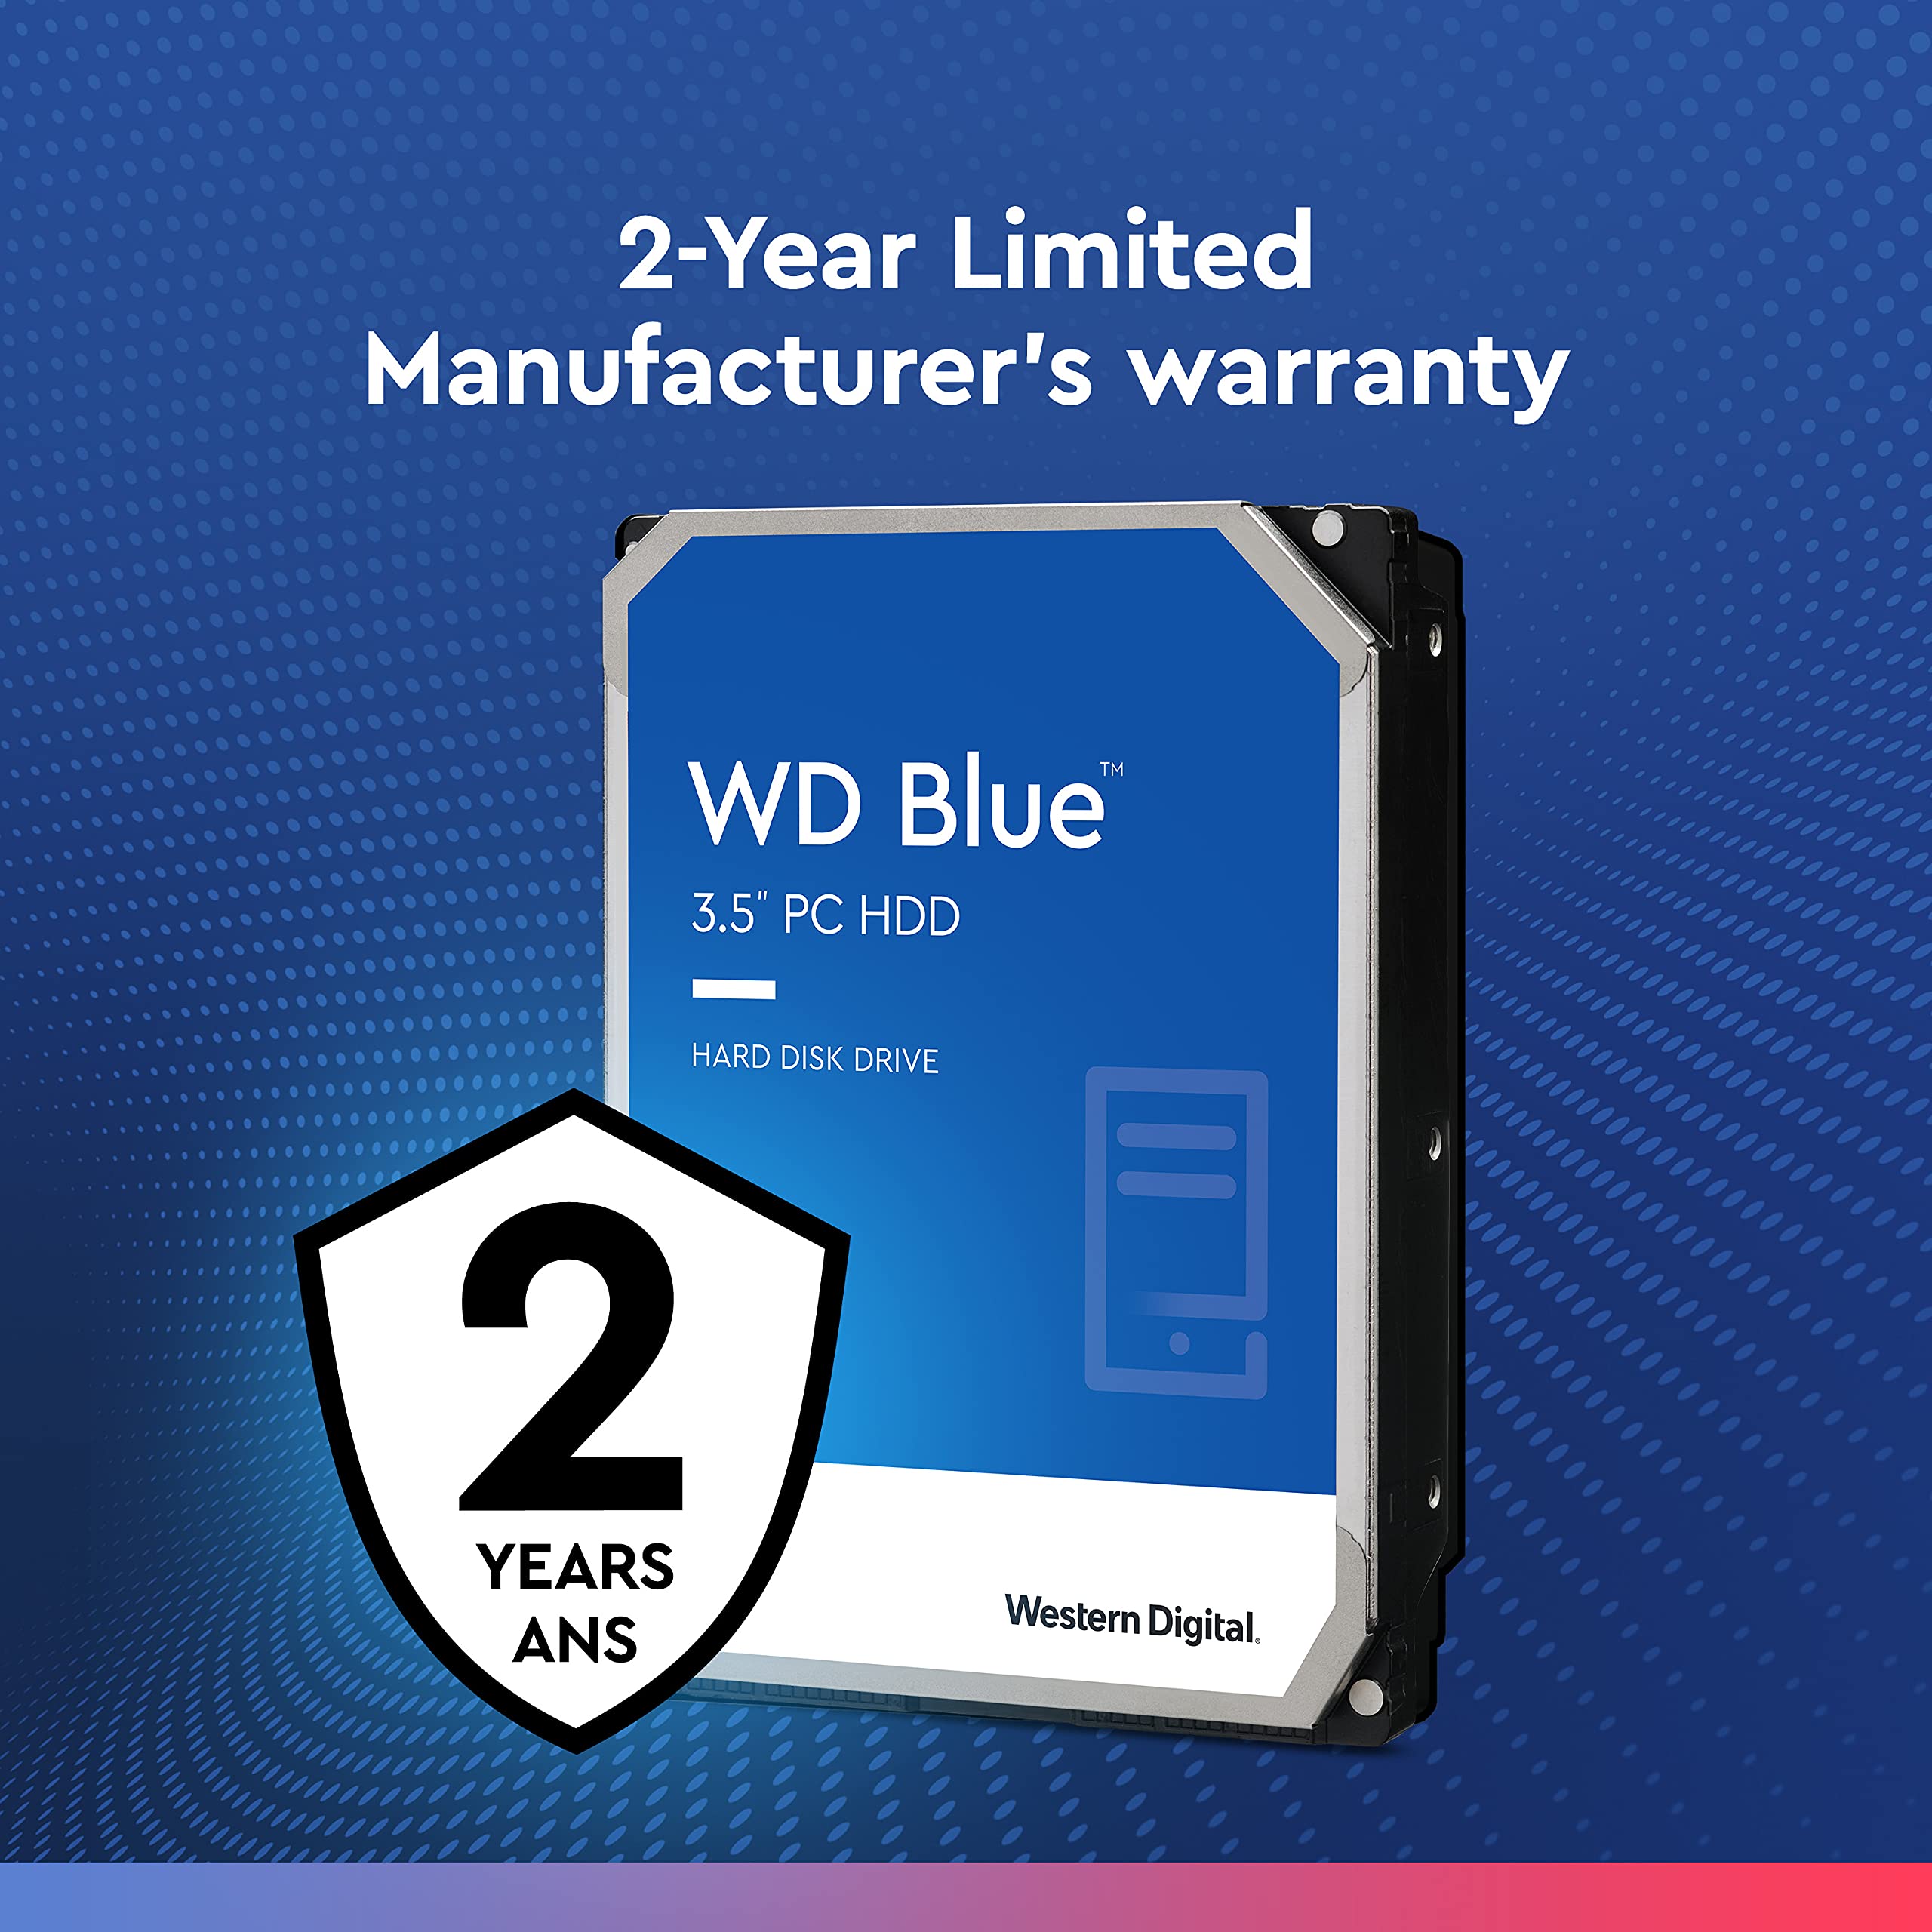 Western Digital 8TB WD Blue PC Internal Hard Drive HDD - 5640 RPM, SATA 6 Gb/s, 256 MB Cache, 3.5